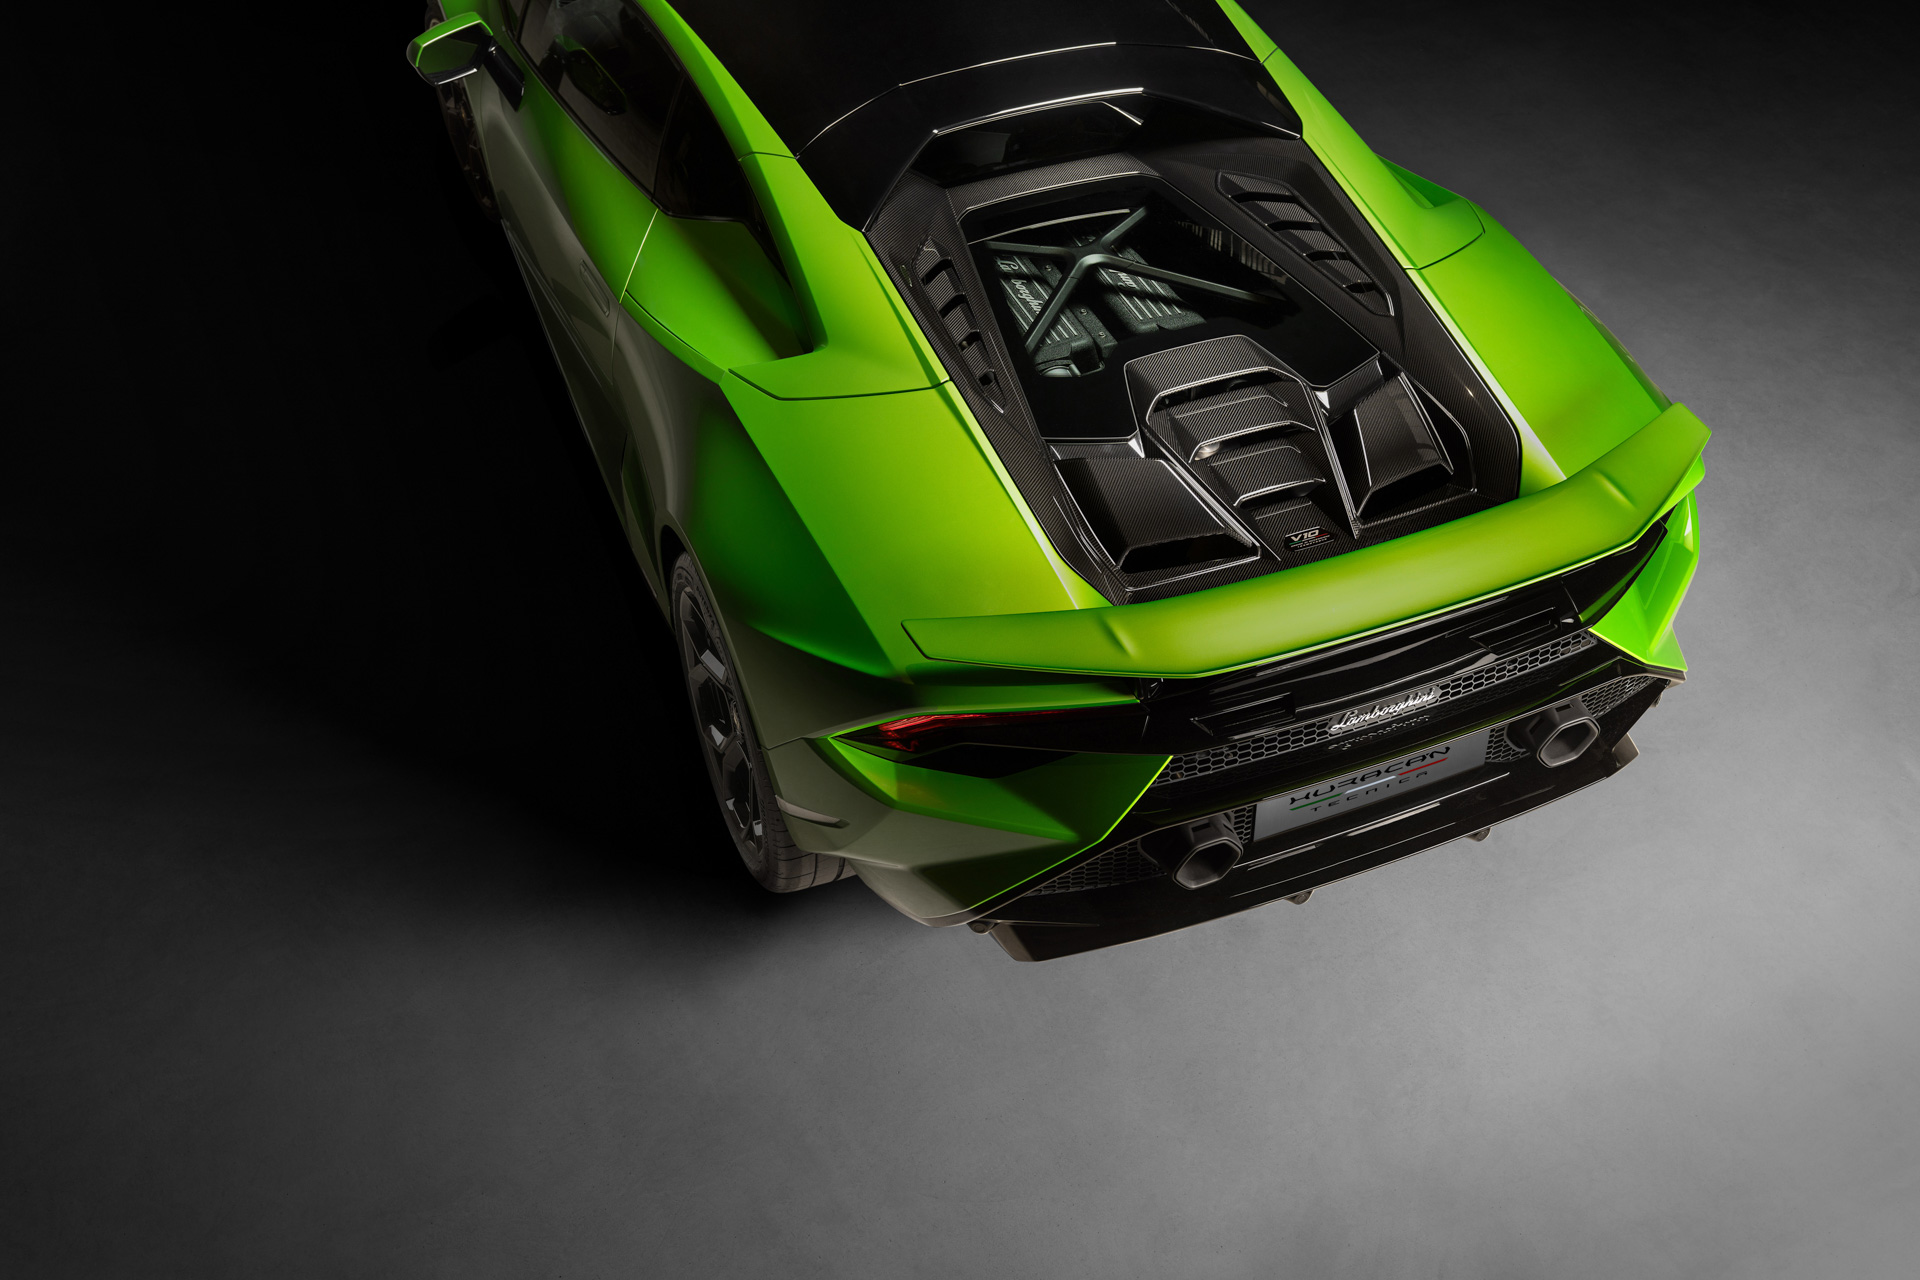 Siêu xe Lamborghini Huracan Tecnica ra mắt với hệ dẫn động cầu sau, mạnh 631 mã lực 2022-lamborghini-huracan-tecnica-00018.jpg